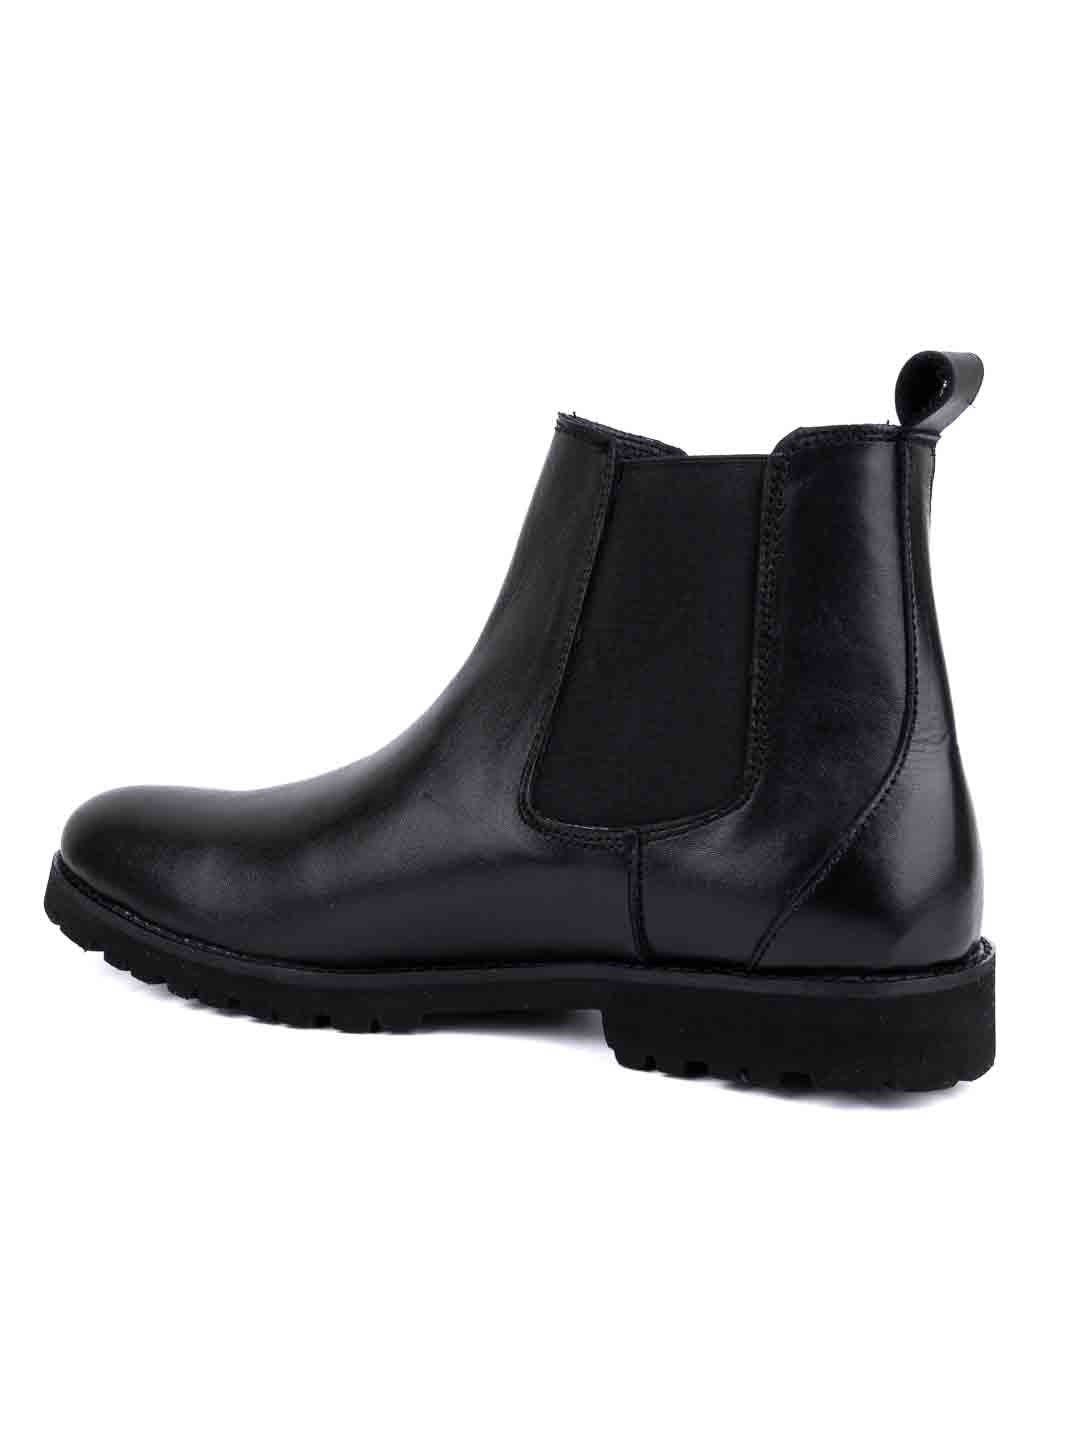 Footwear, Men Footwear, Black Chelsea Boots